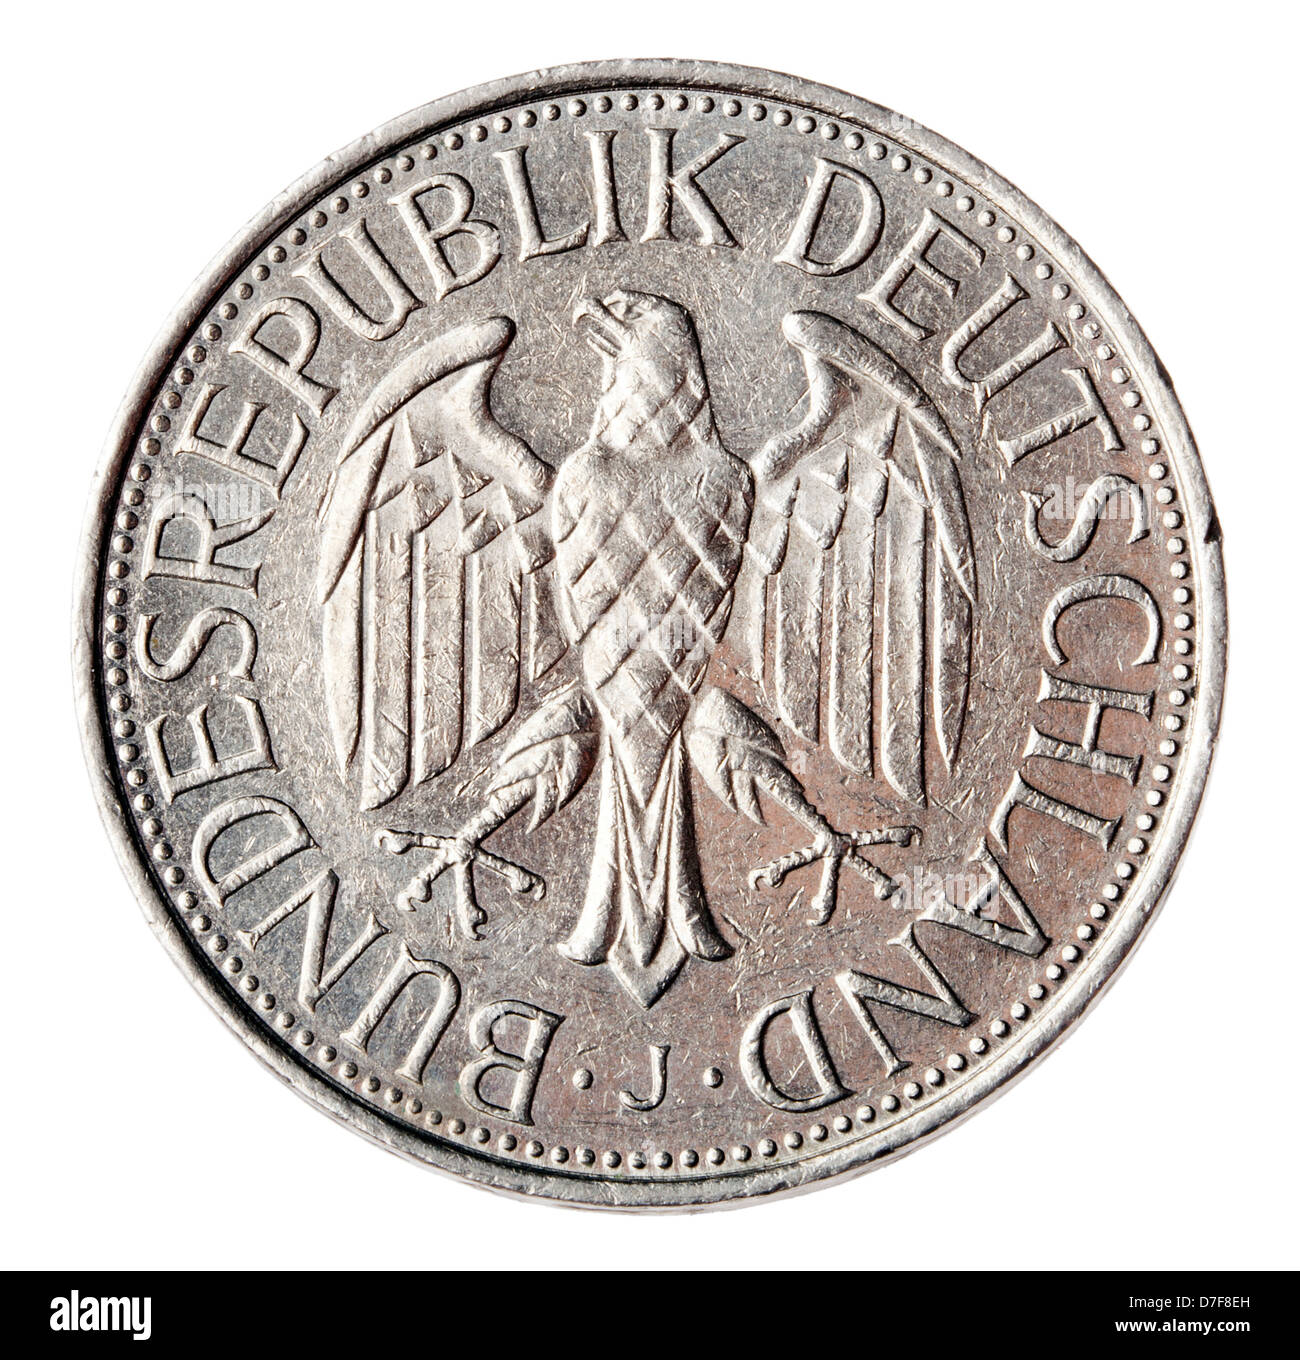 Vue frontale arrière (queues) face a 1 Deutsche Mark (DM) pièce de monnaie frappées en 1989. Manteau représenté est l'Allemand Allemand - armes blanche. Banque D'Images